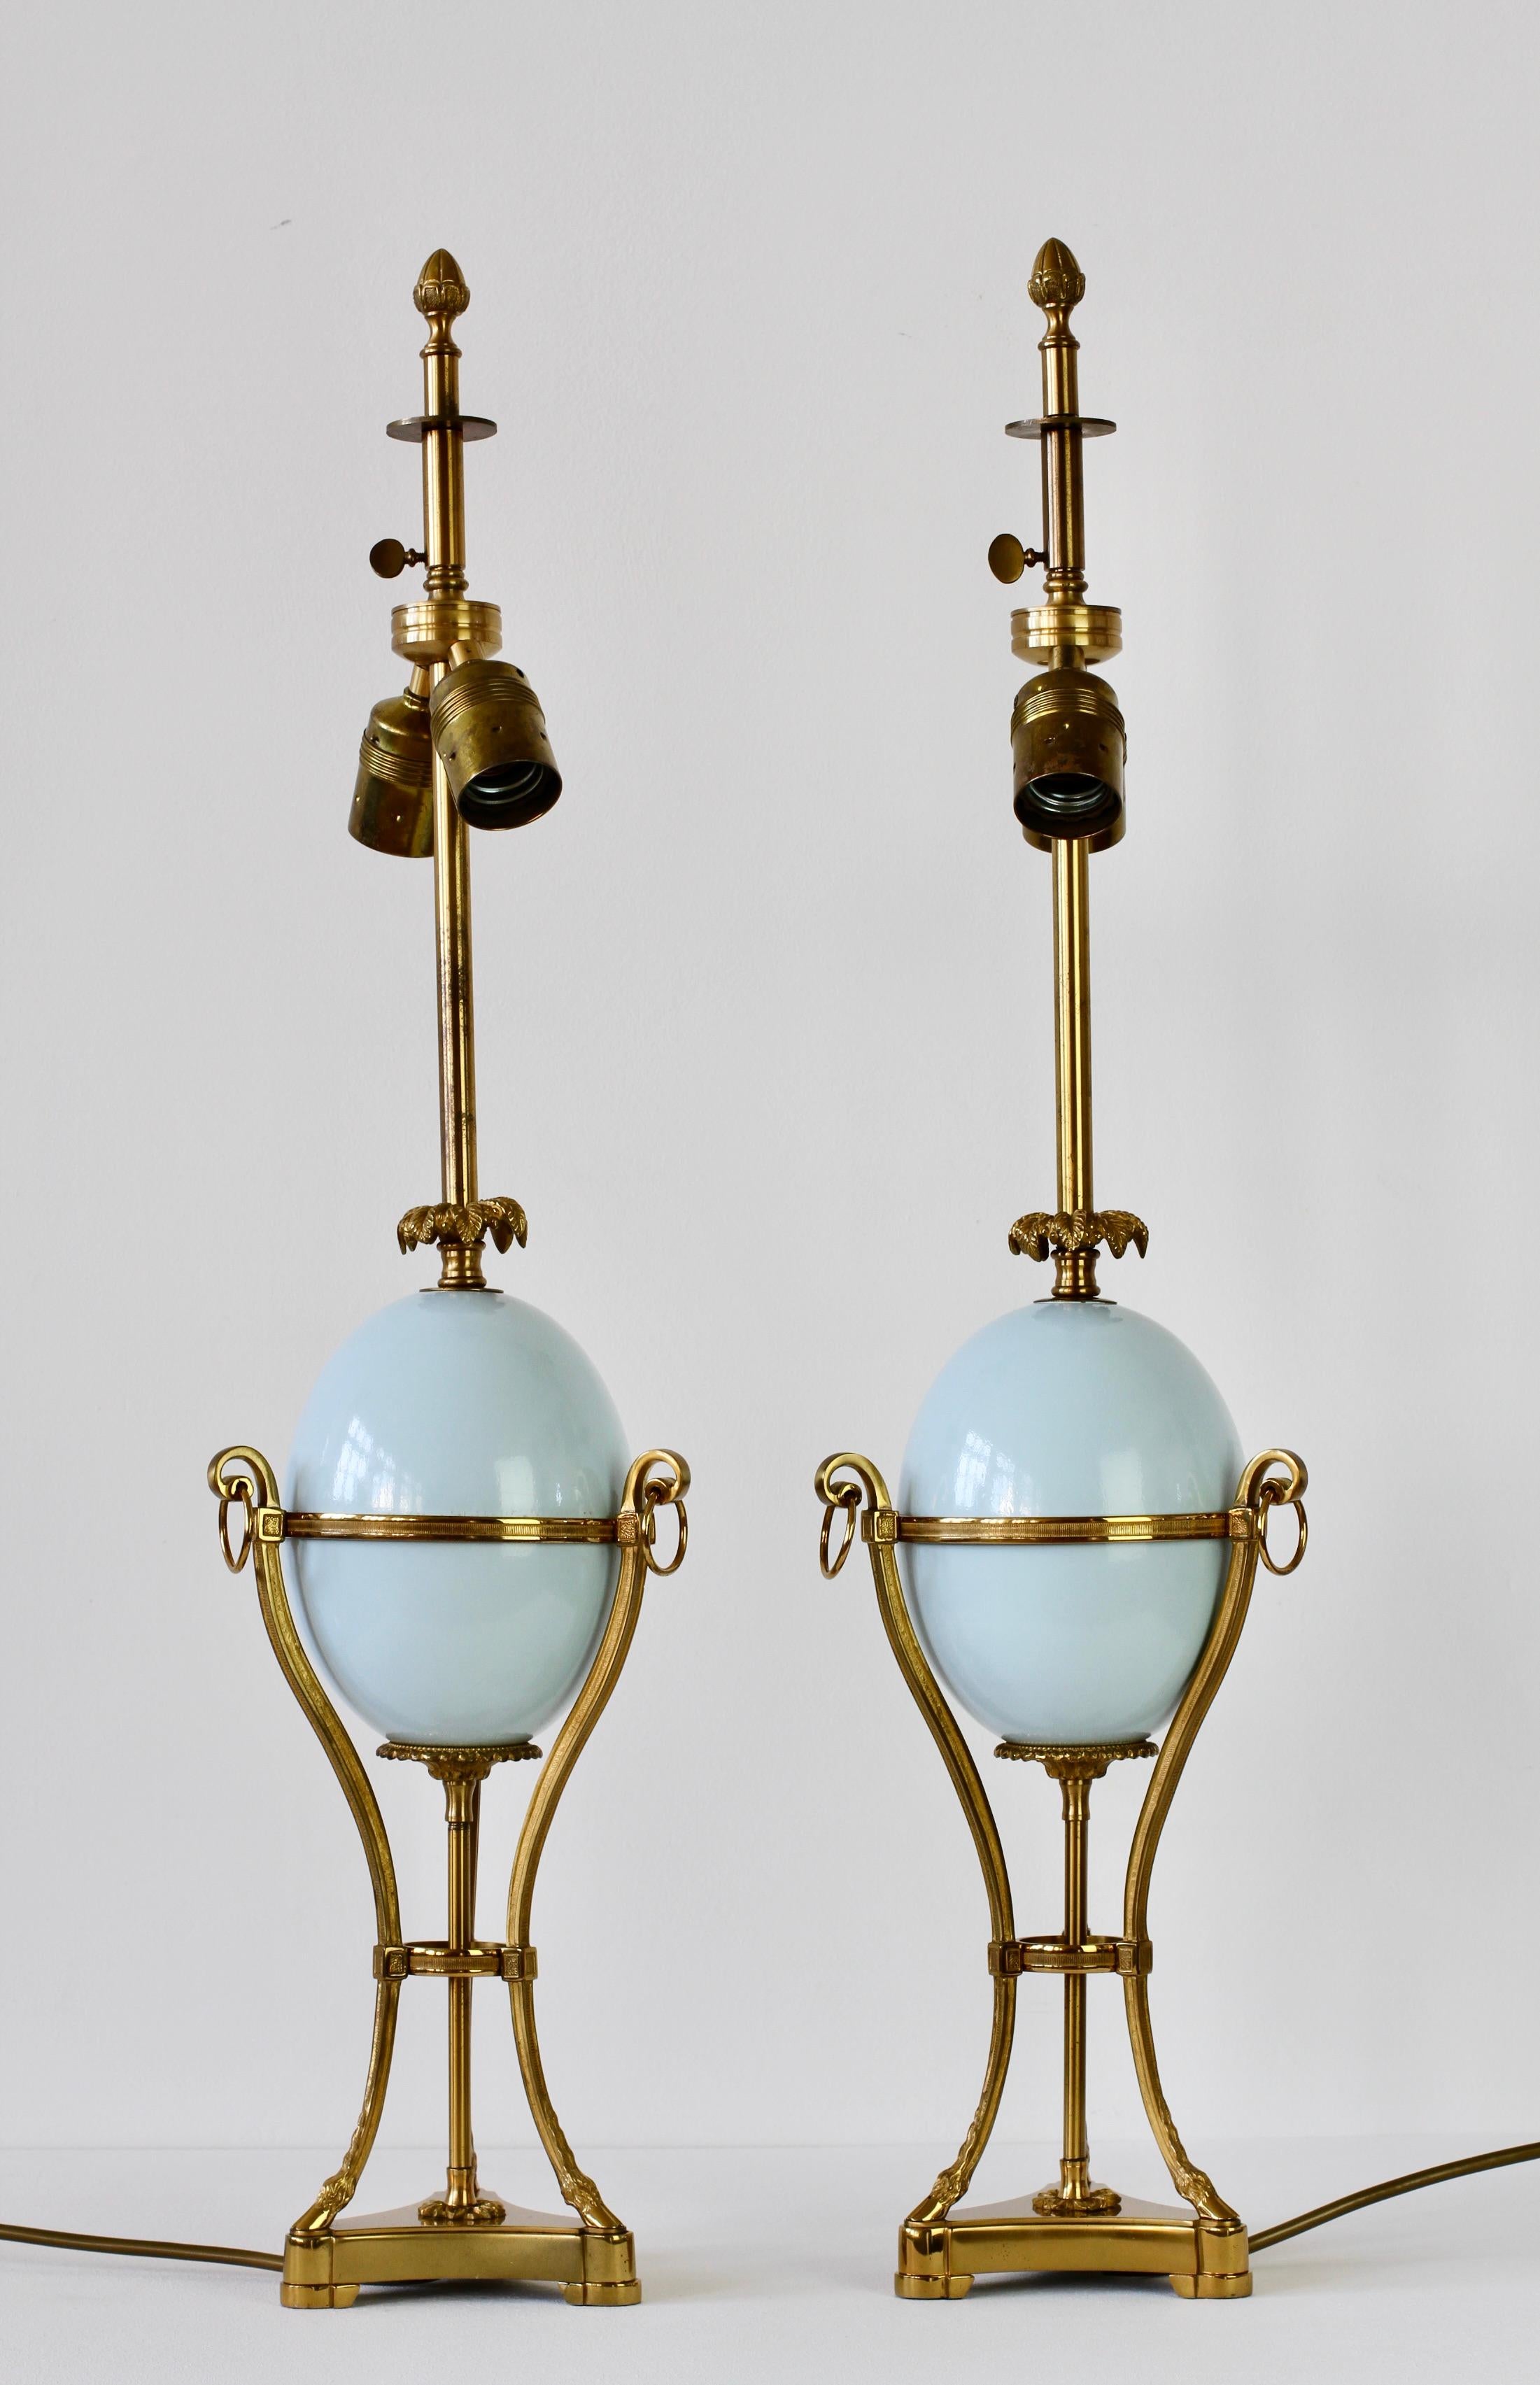 Maison By Vintage attribué au milieu du siècle, paire de lampes néoclassiques françaises en laiton centrées sur des oeufs d'autruche. Les détails de la feuille de palmier au-dessus des œufs bleus, le gland final sur le support de l'abat-jour, le